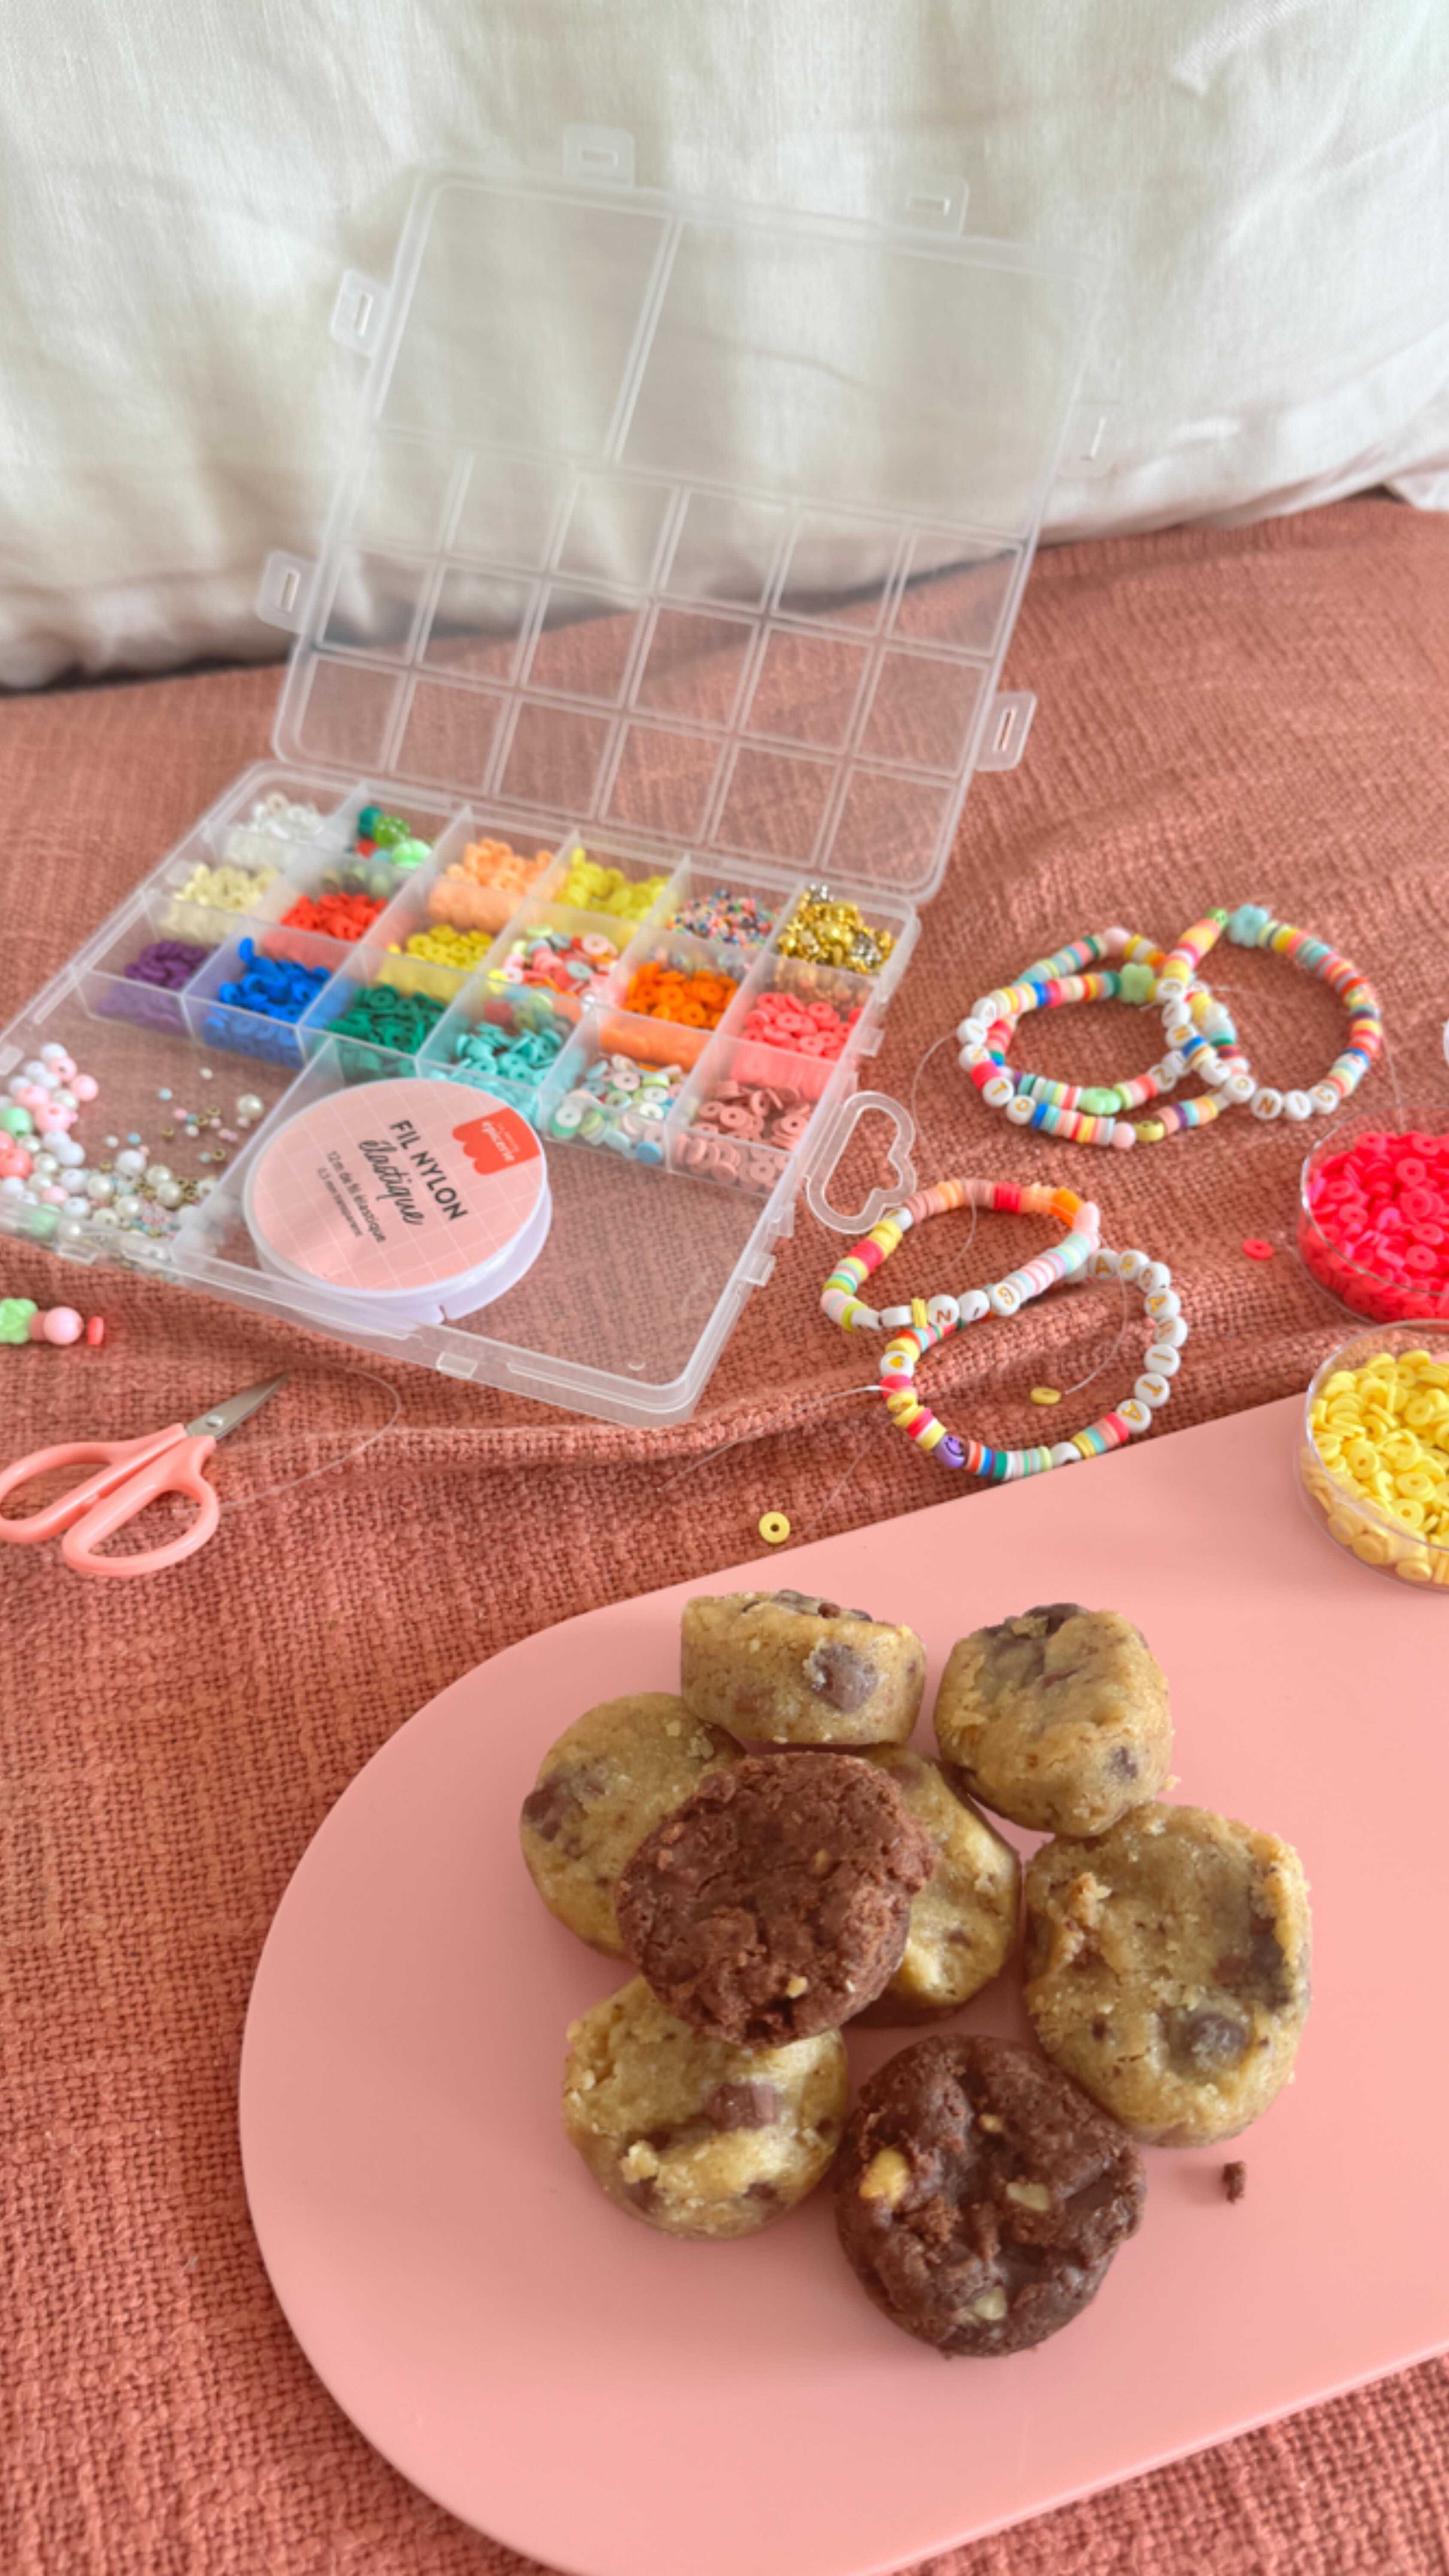 La créativité à son comble ! Aujourd’hui, on confectionne de jolis bracelets en perles et on se régale avec nos cookies Giraudon. Parce que l’inspiration passe aussi par les papilles ! 🎨

🍪 Faits maison à Gémenos (13)
📍Disponibles dans plusieurs points de vente
💌 Plus d’infos sur notre site web (lien dans notre bio)

#CookiesGiraudon #Bonheur #CookiesAvecAmour #GourmandiseAuthentique #homemadewithlove #CookiesArtisanaux #FaitAvecAmour #Gémenos #CuisineArtisanale #marseille #MadeInFrance